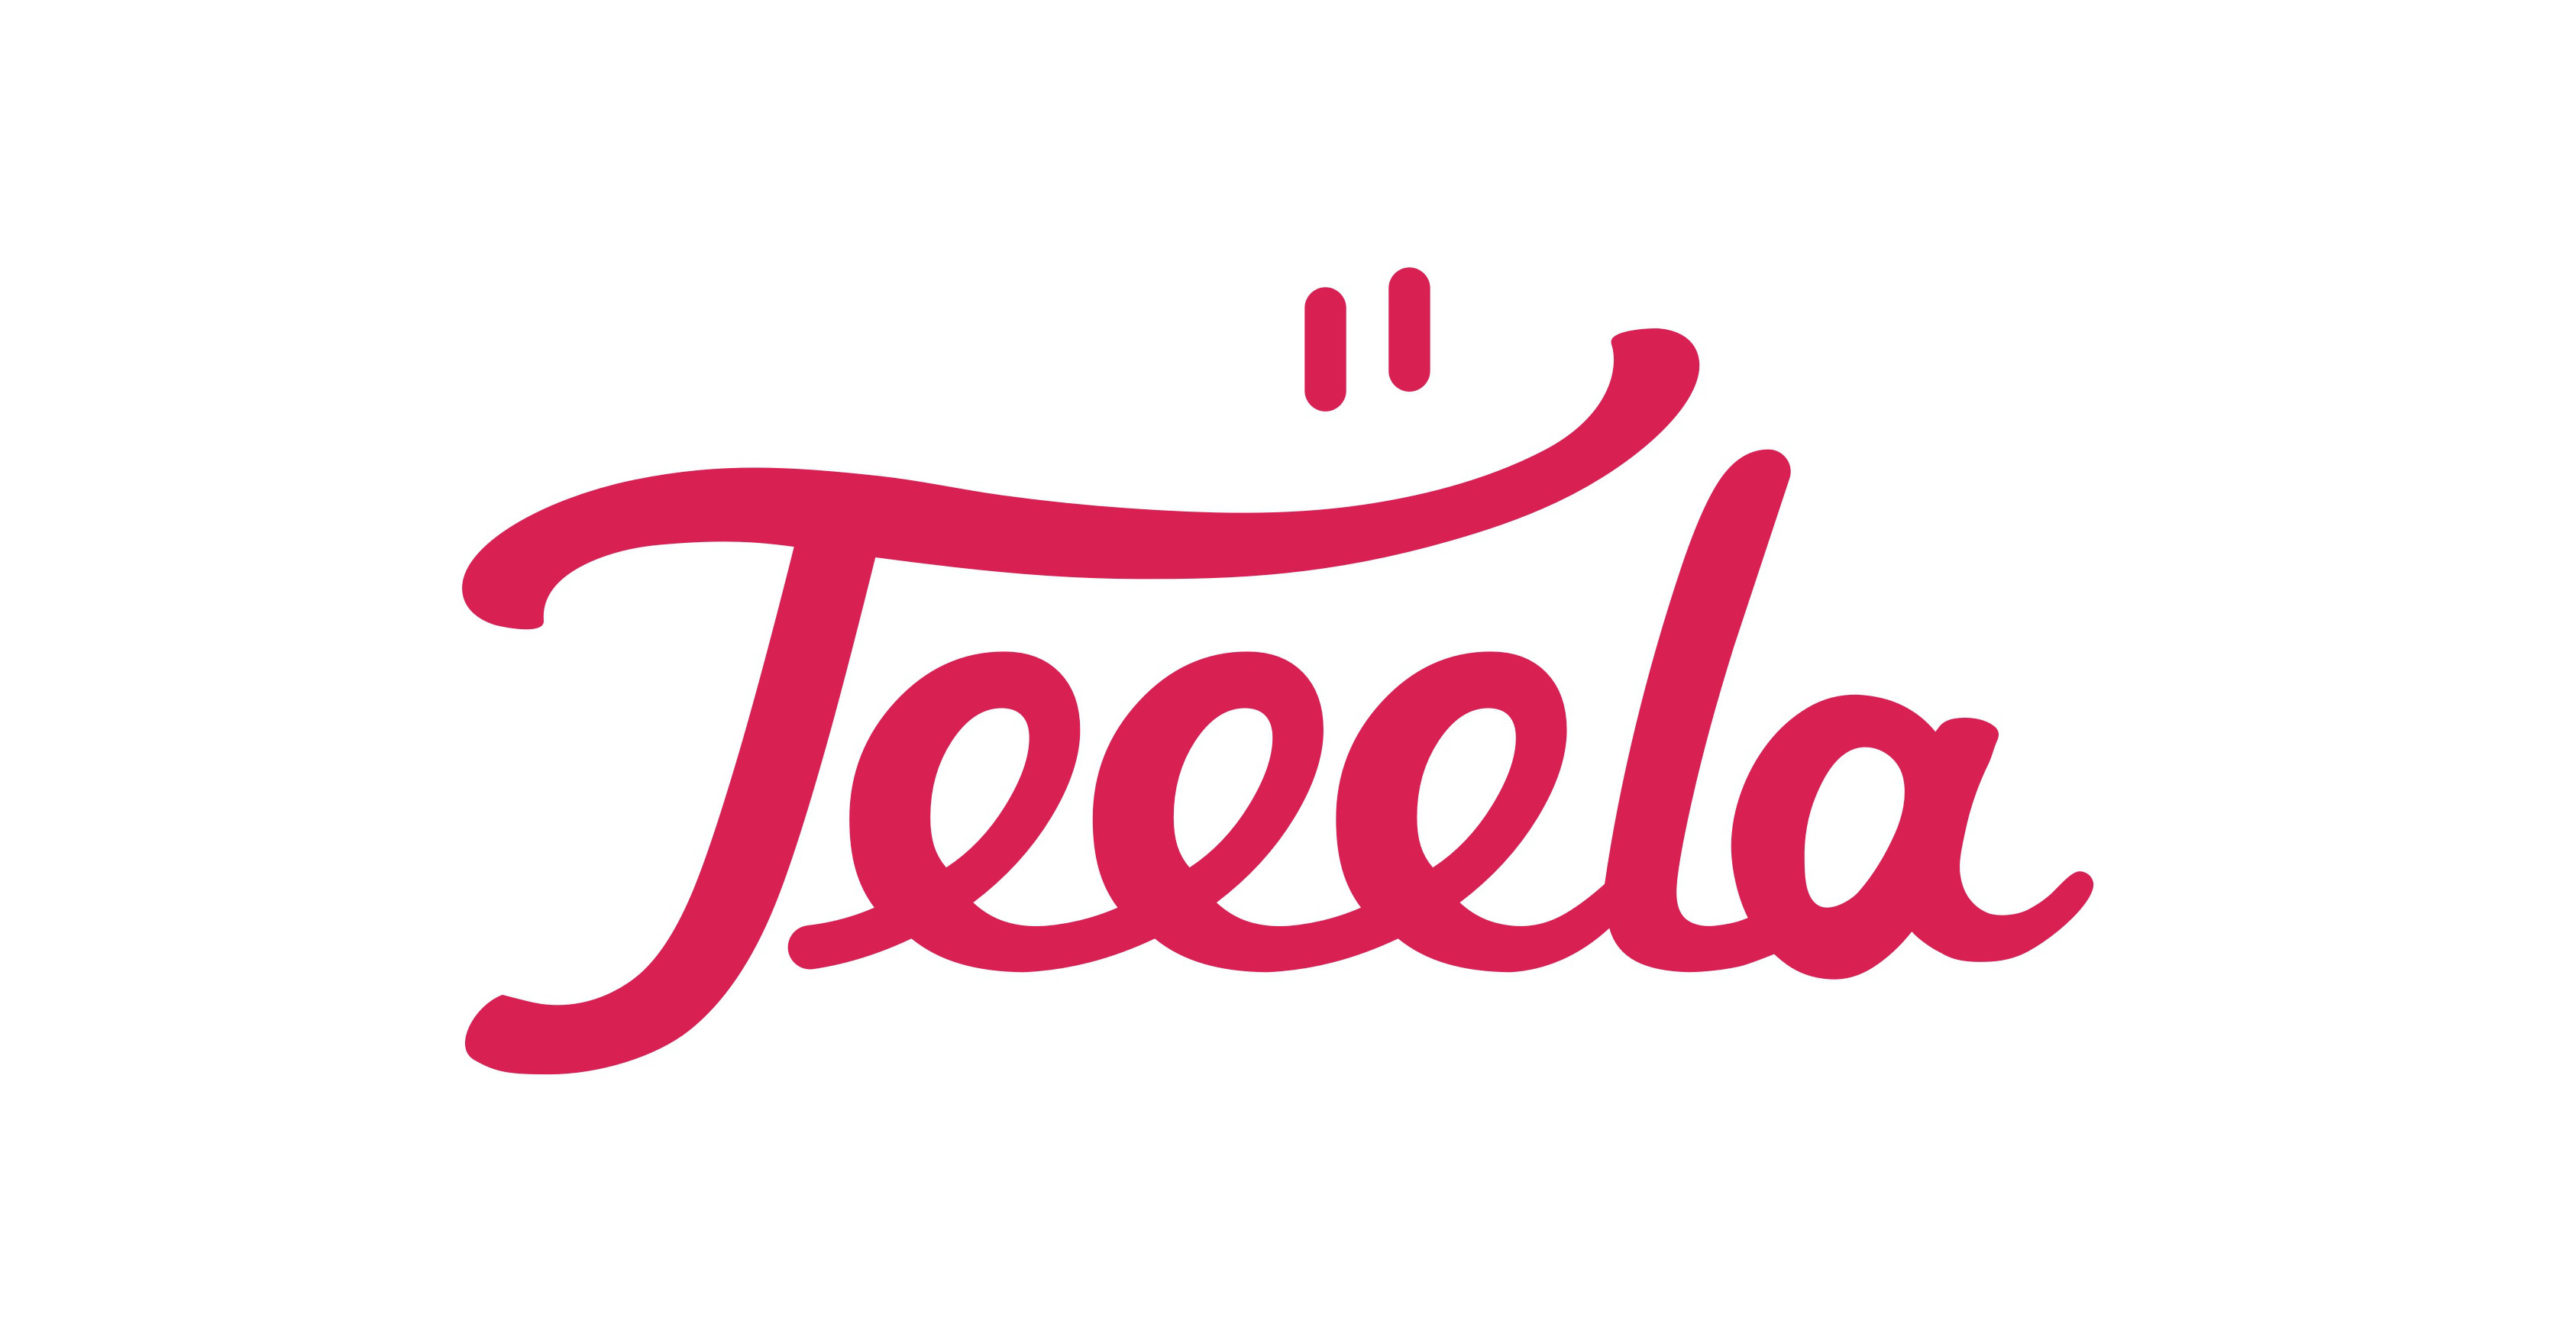 Teeela Retailer logo